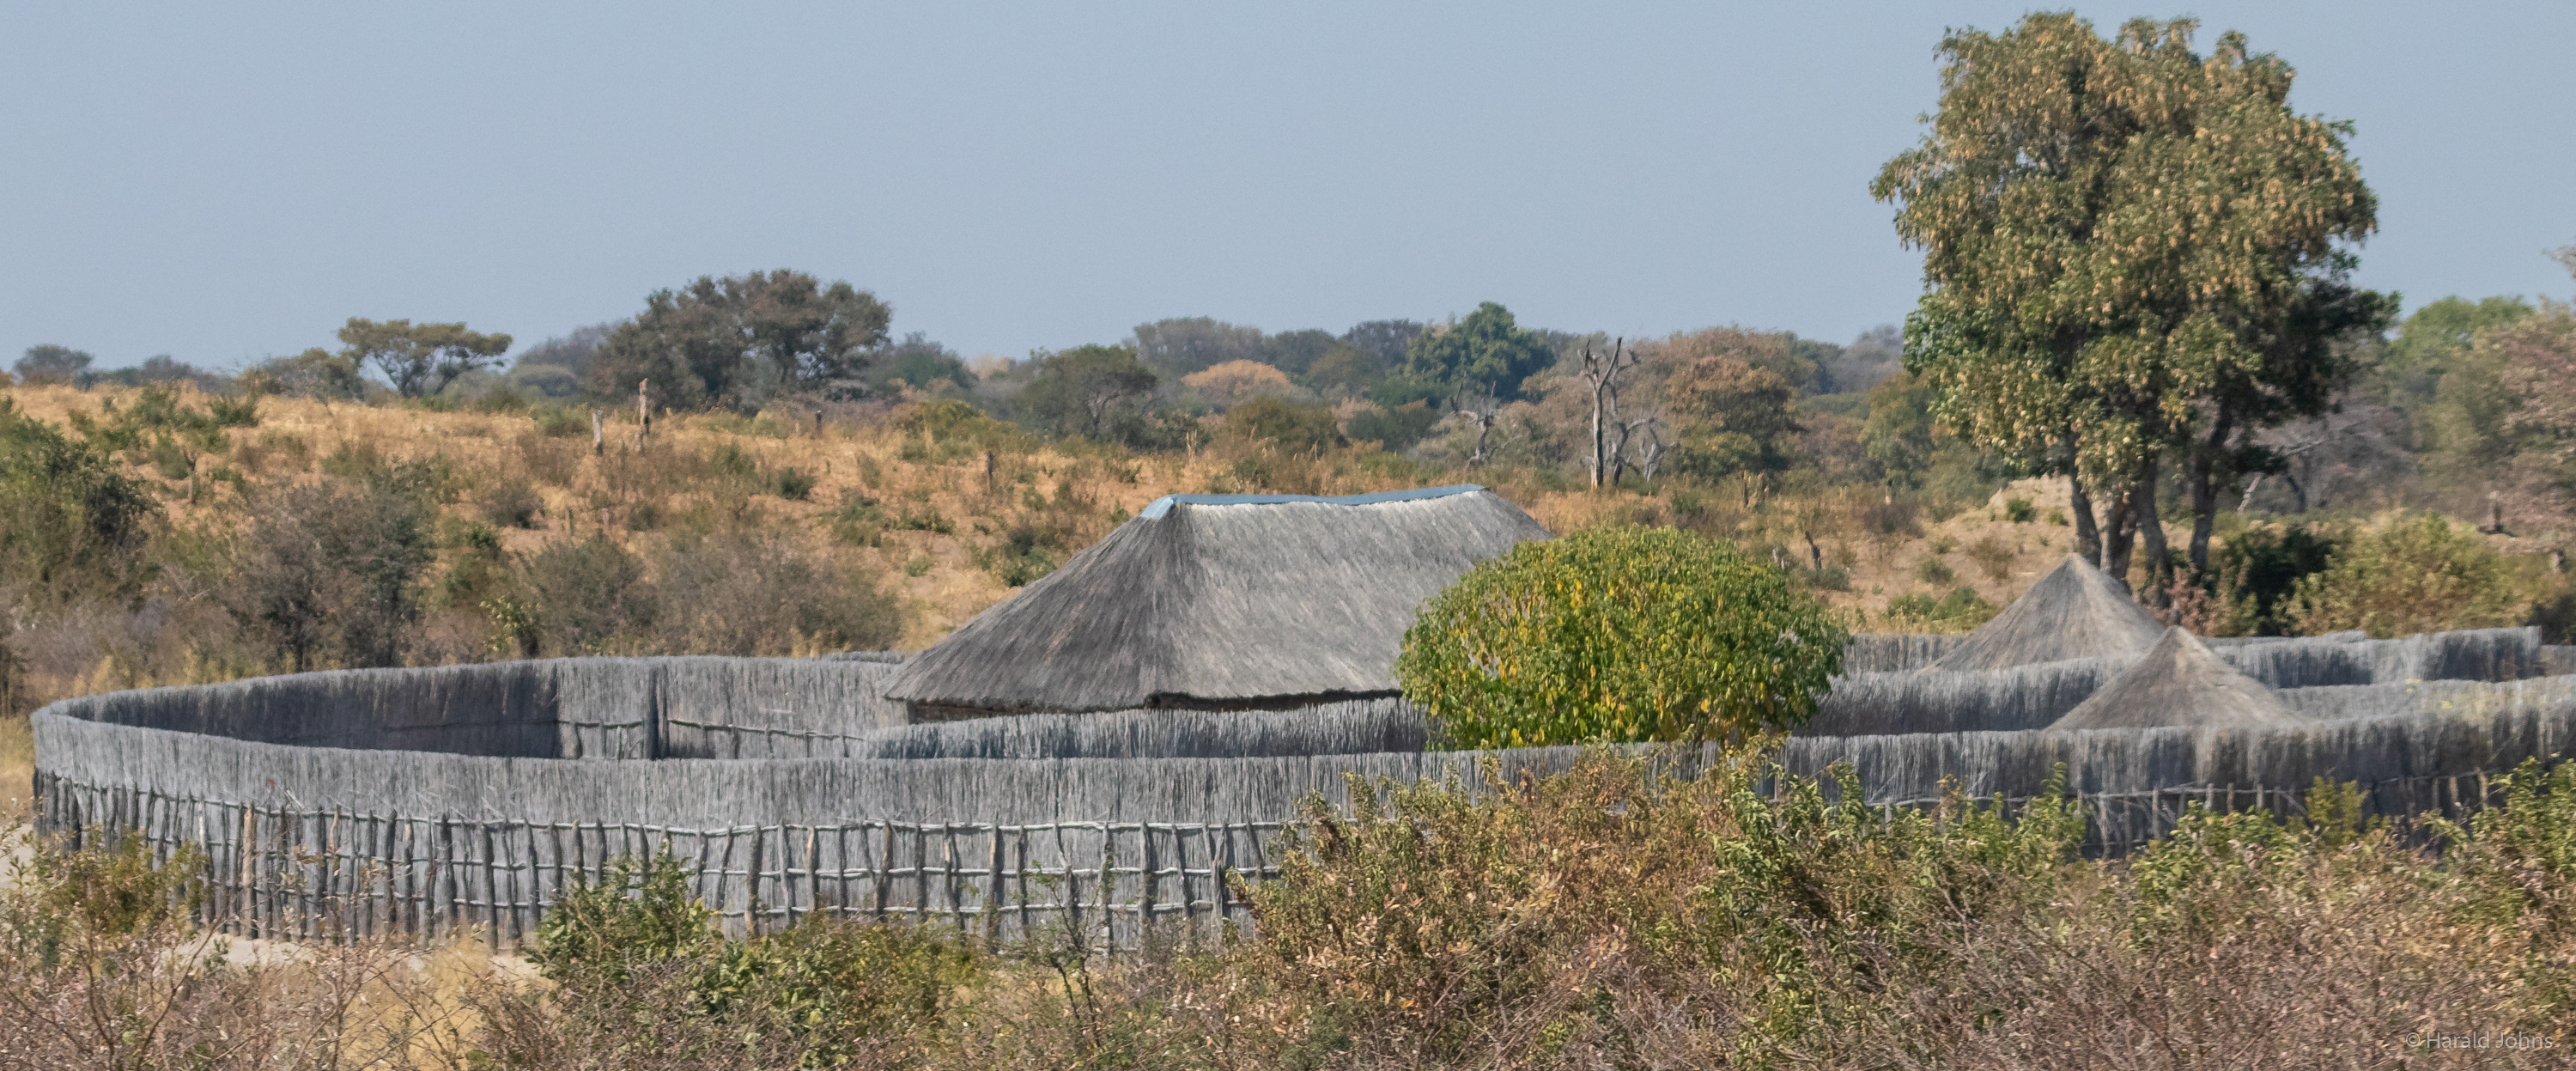 Siedlungen bei Katima Mulilo